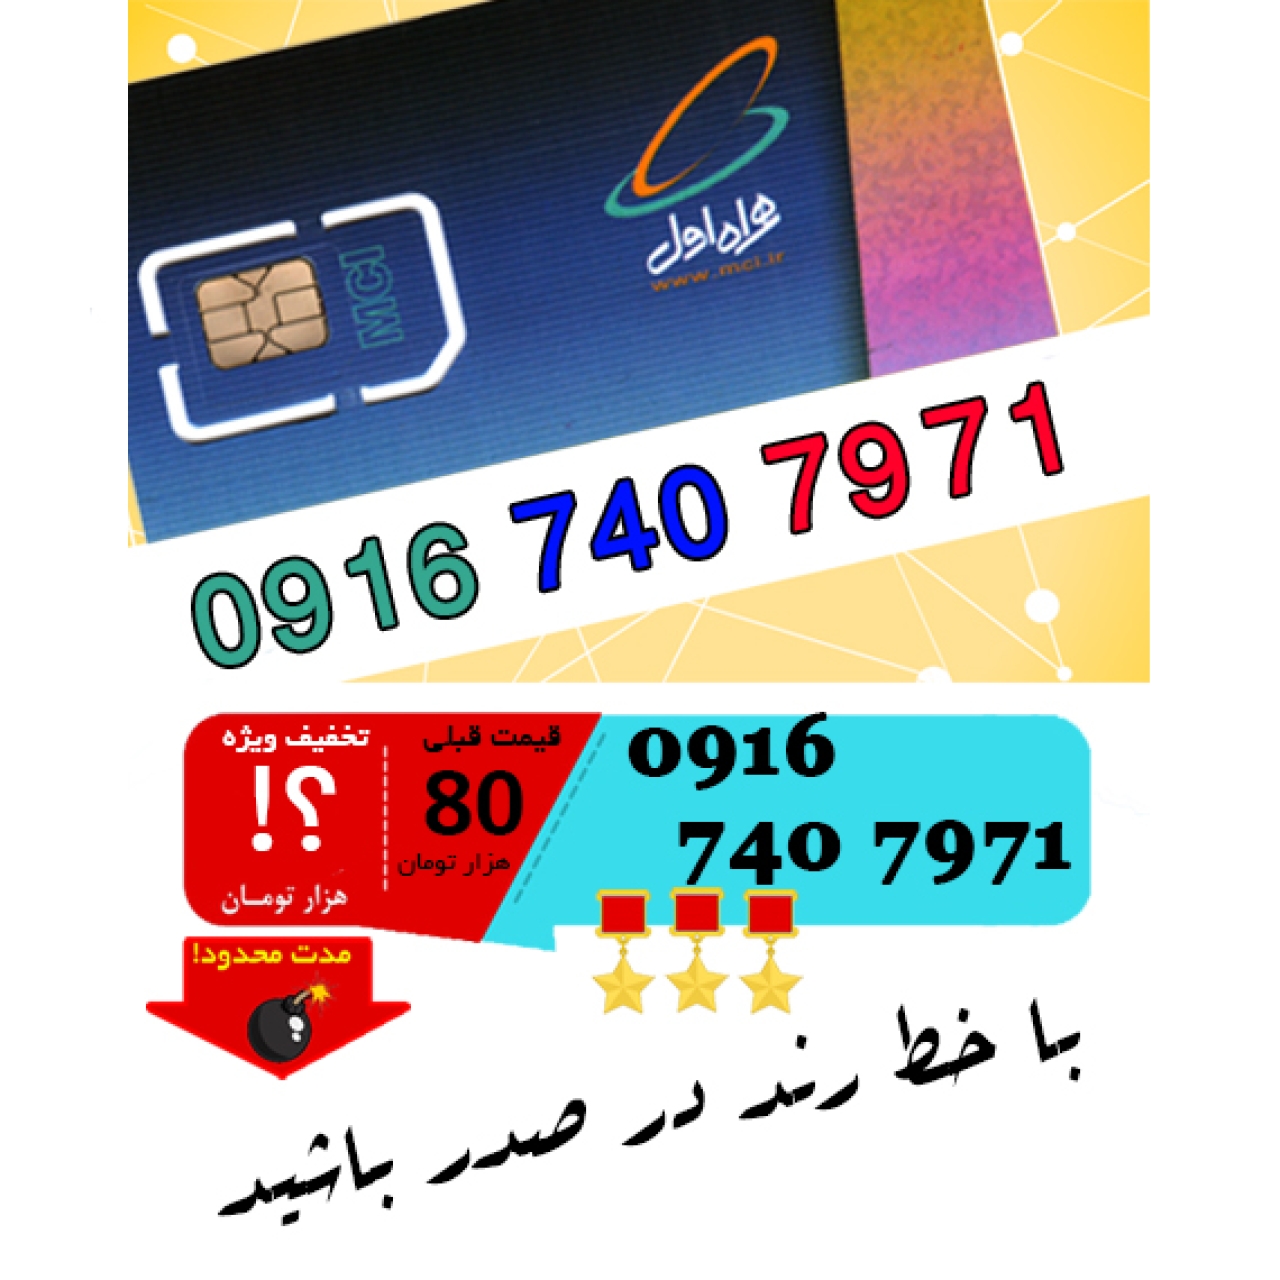 سیم کارت اعتباری رند همراه اول 09167407971